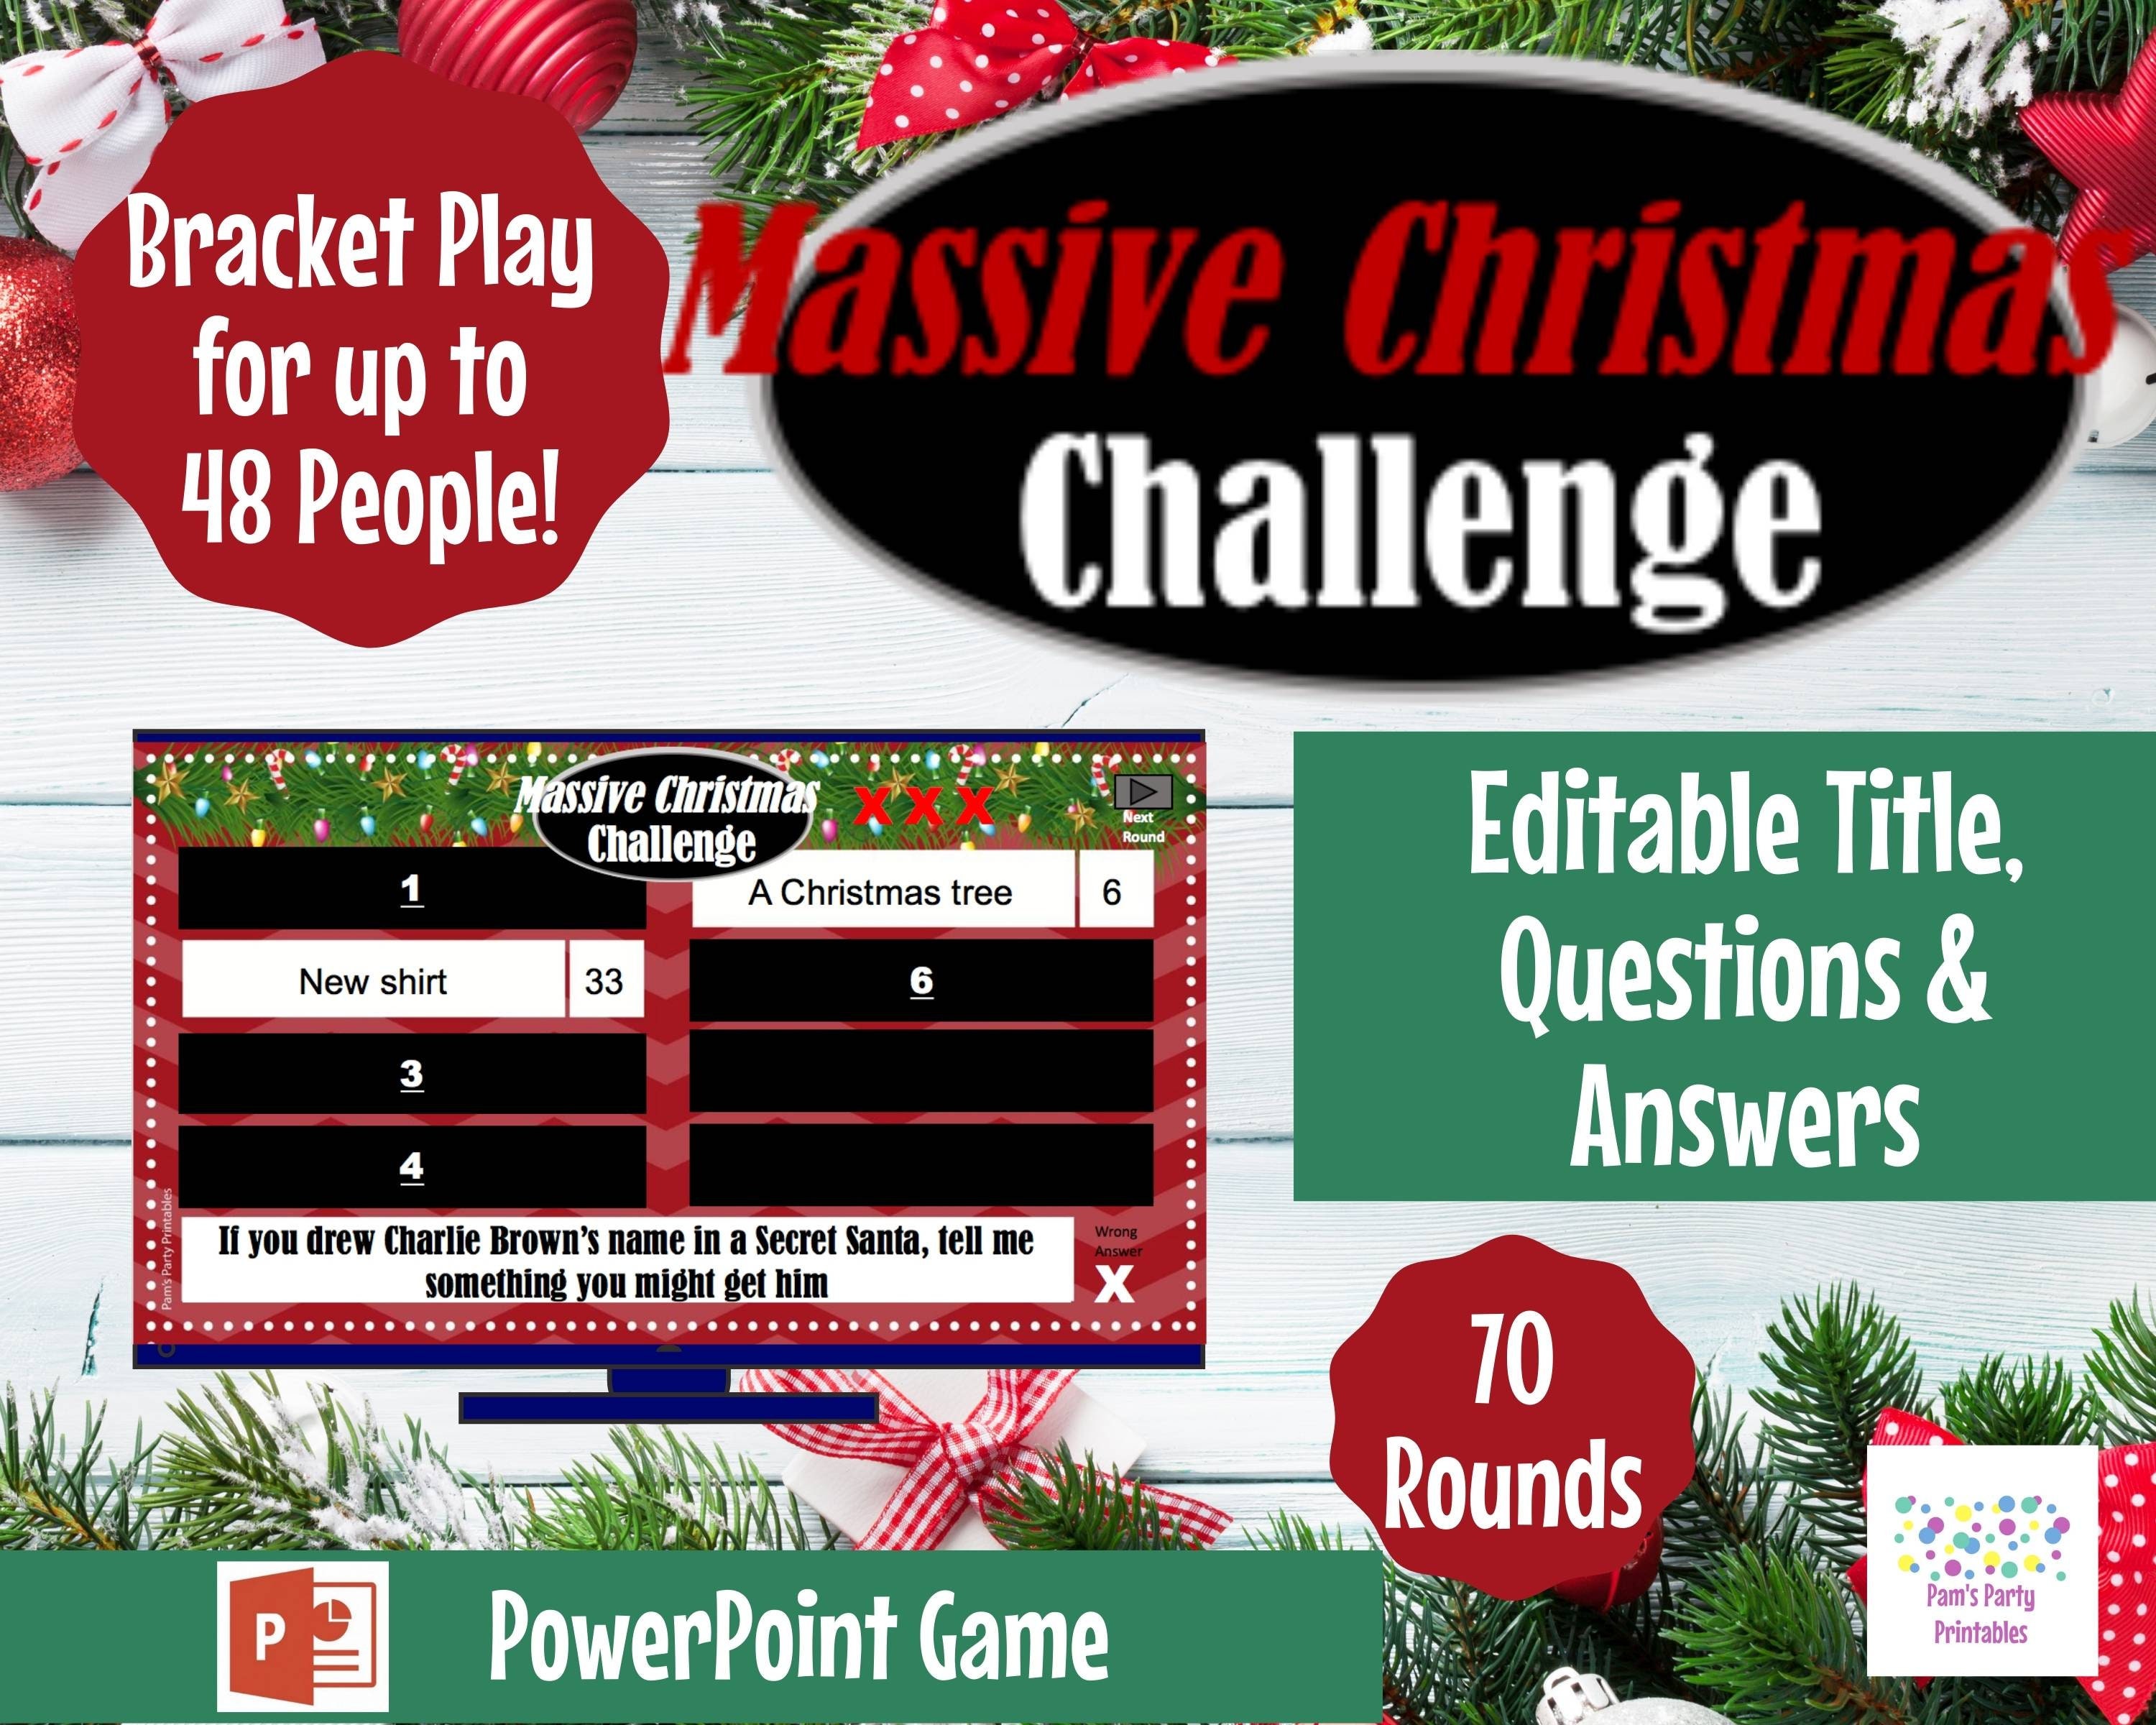 Worldwide Christmas Battle Challenge Coming Soon